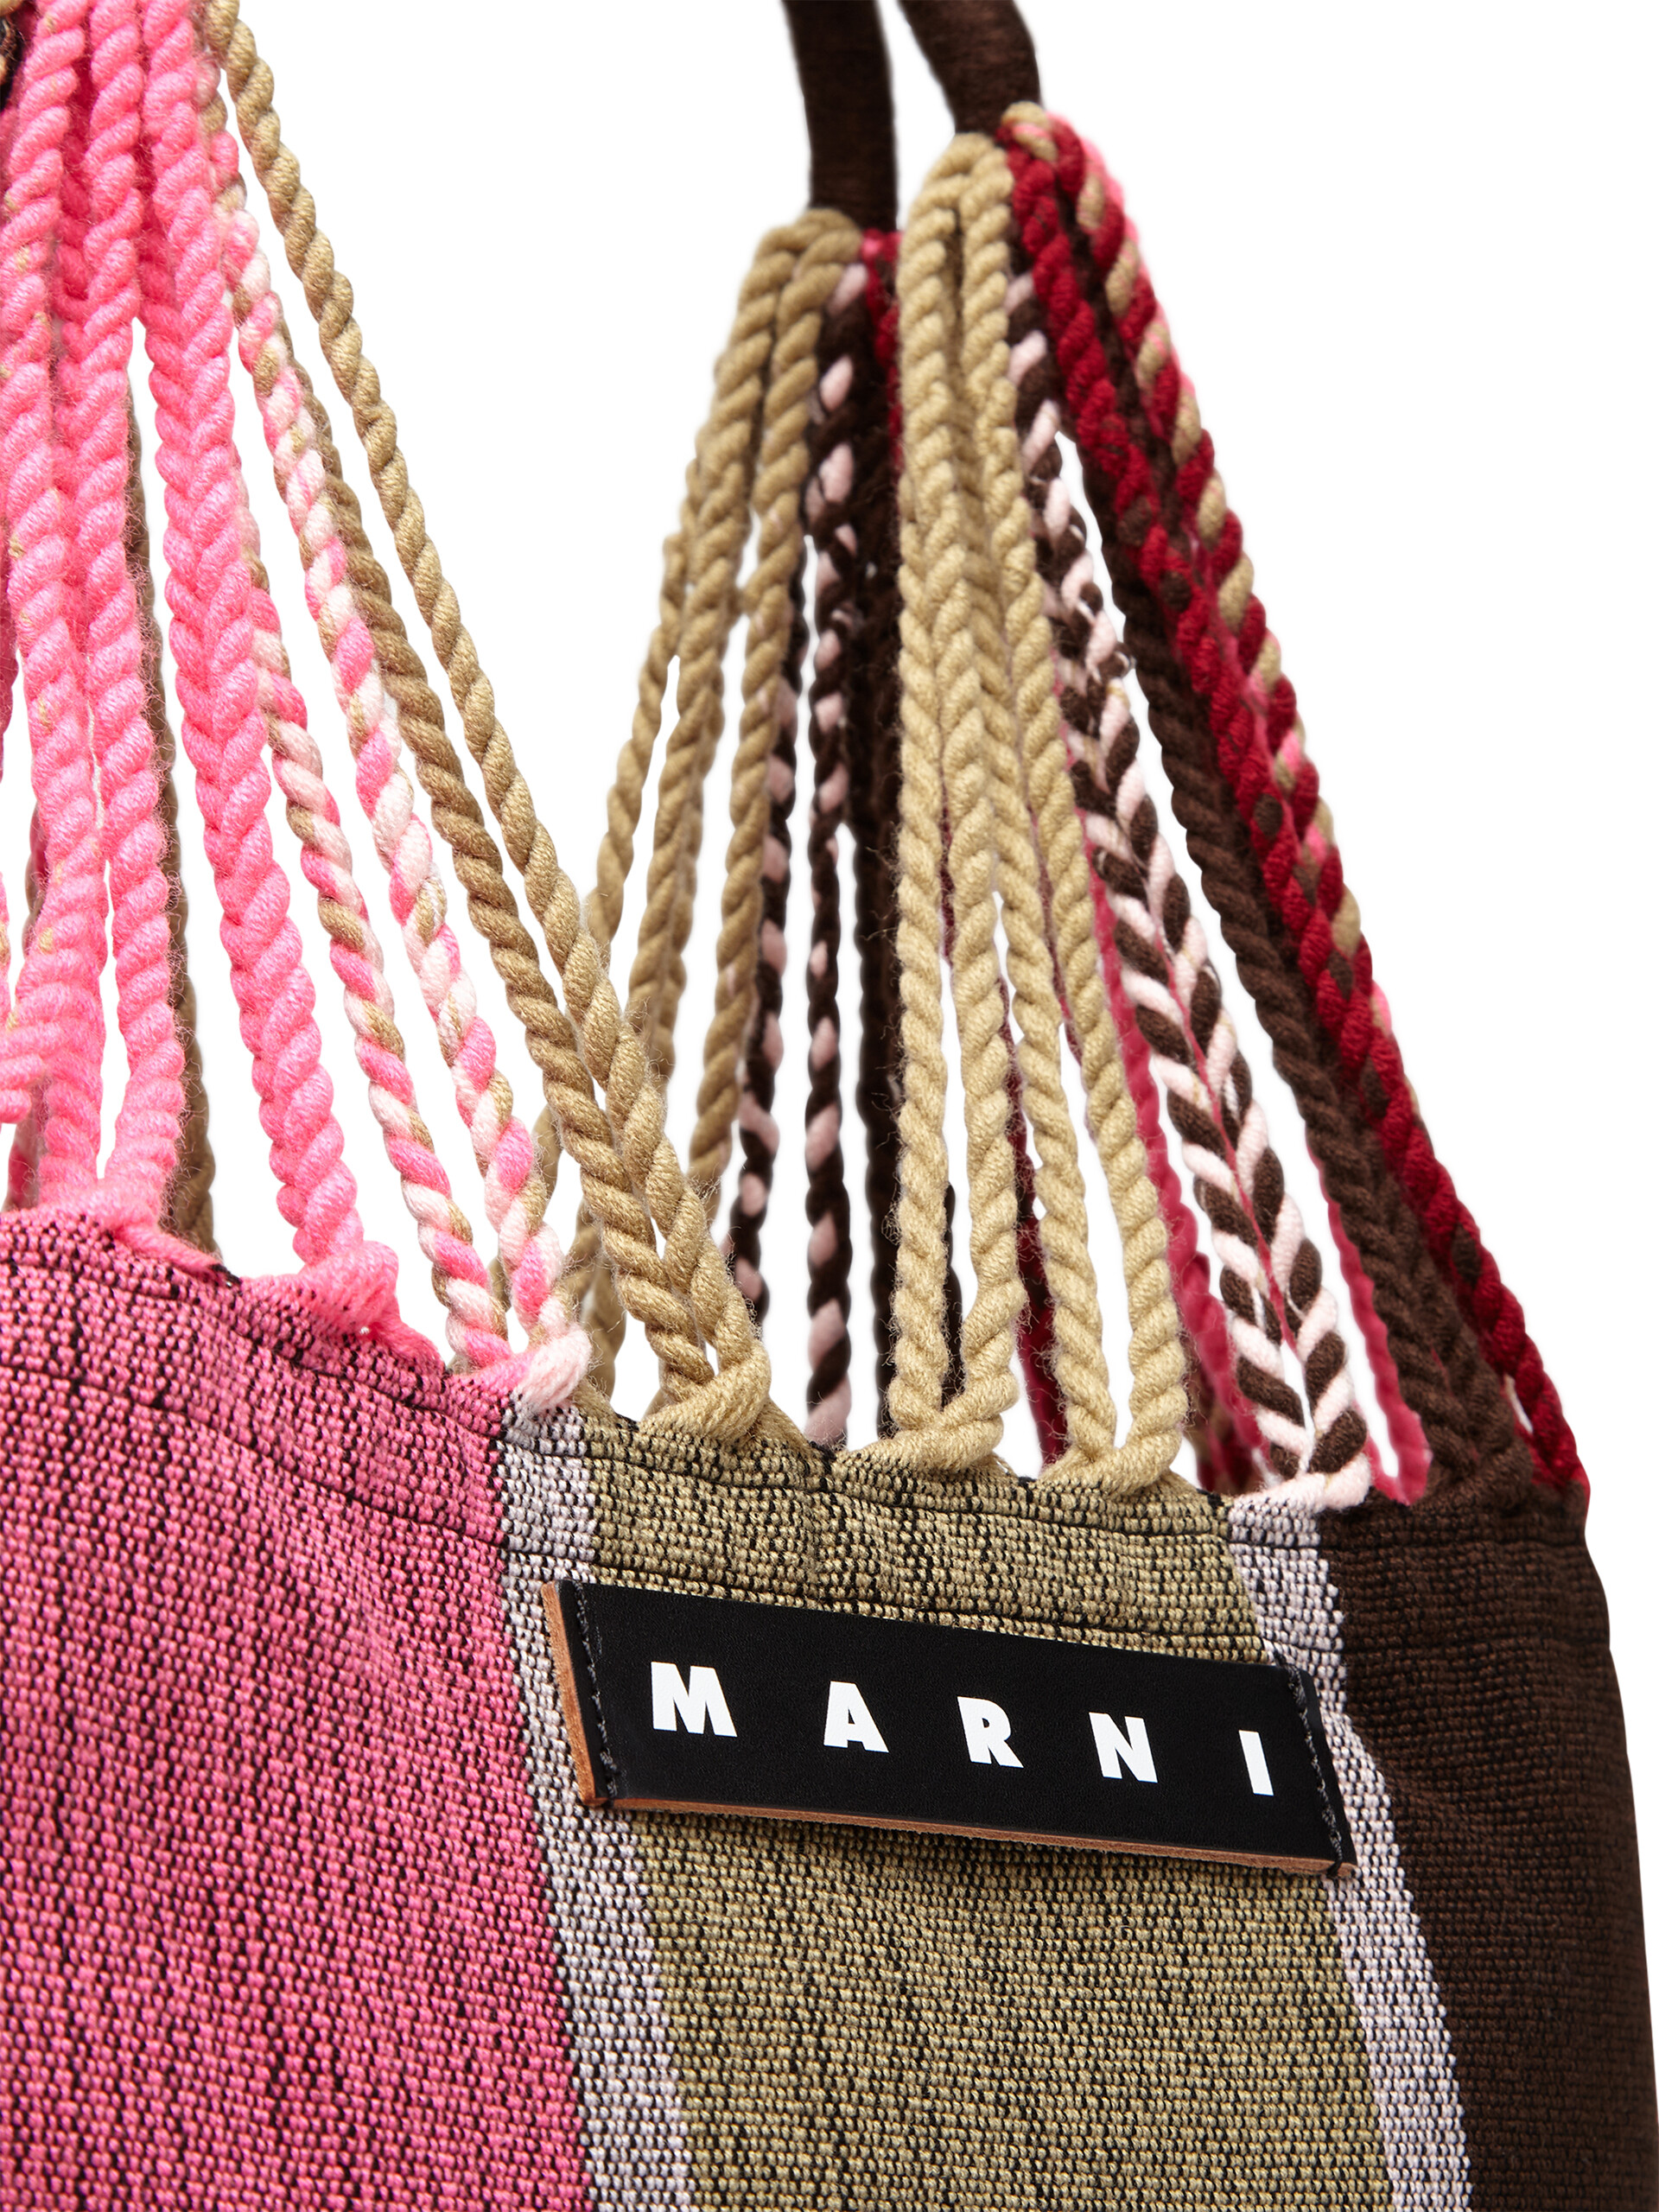 Borsa shopping MARNI MARKET HAMMOCK con manico lavorato ad amaca in poliestere rosa beige e marrone - Borse - Image 4